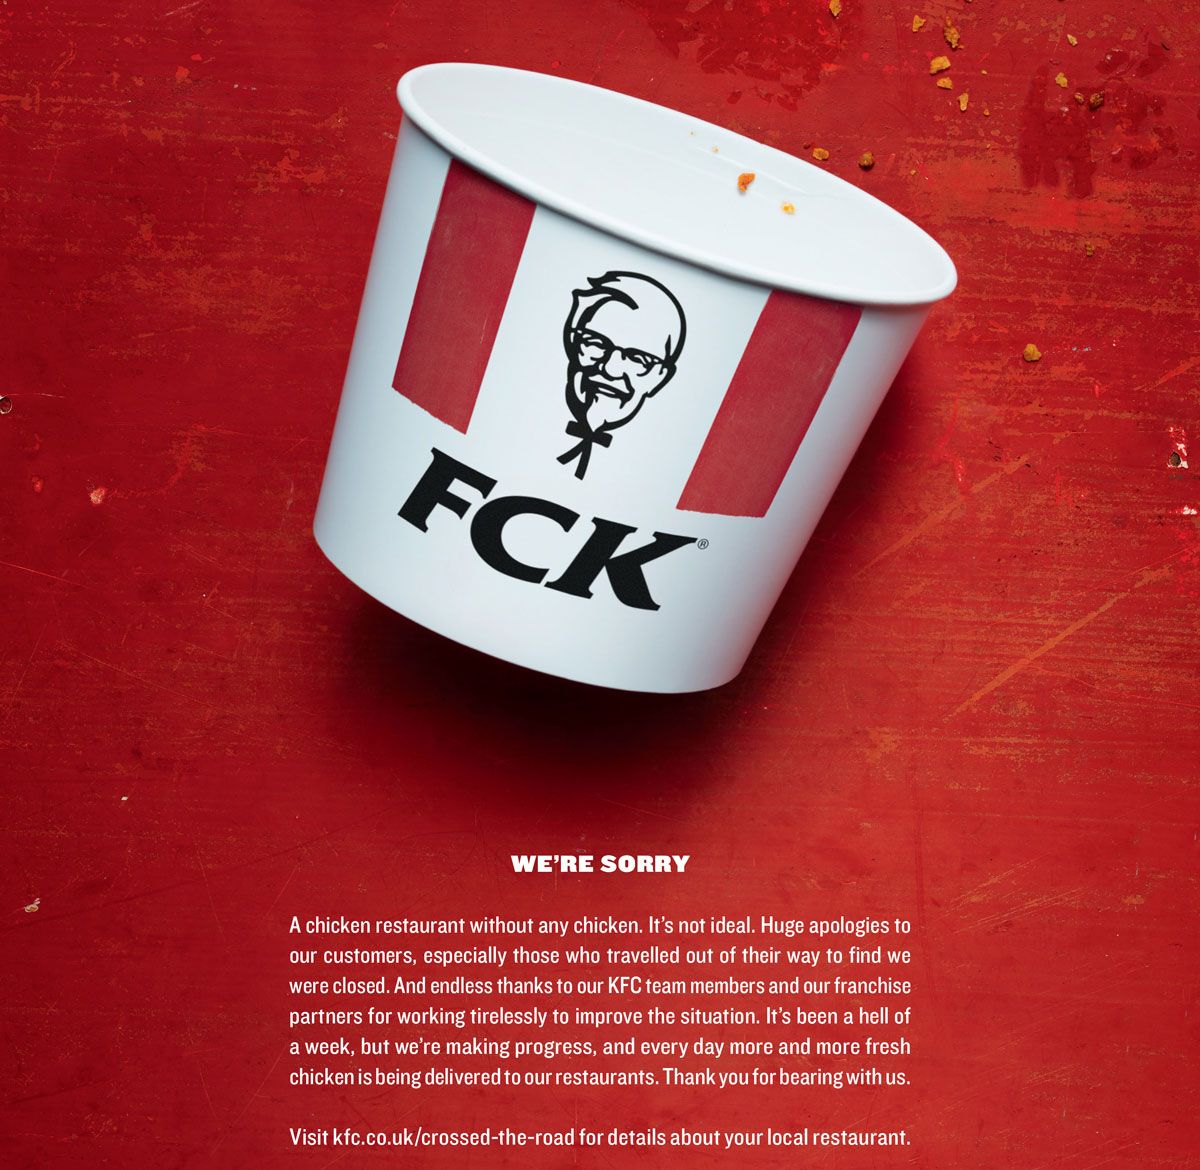 Ispis oglasa: KFC ostaje bez piletine